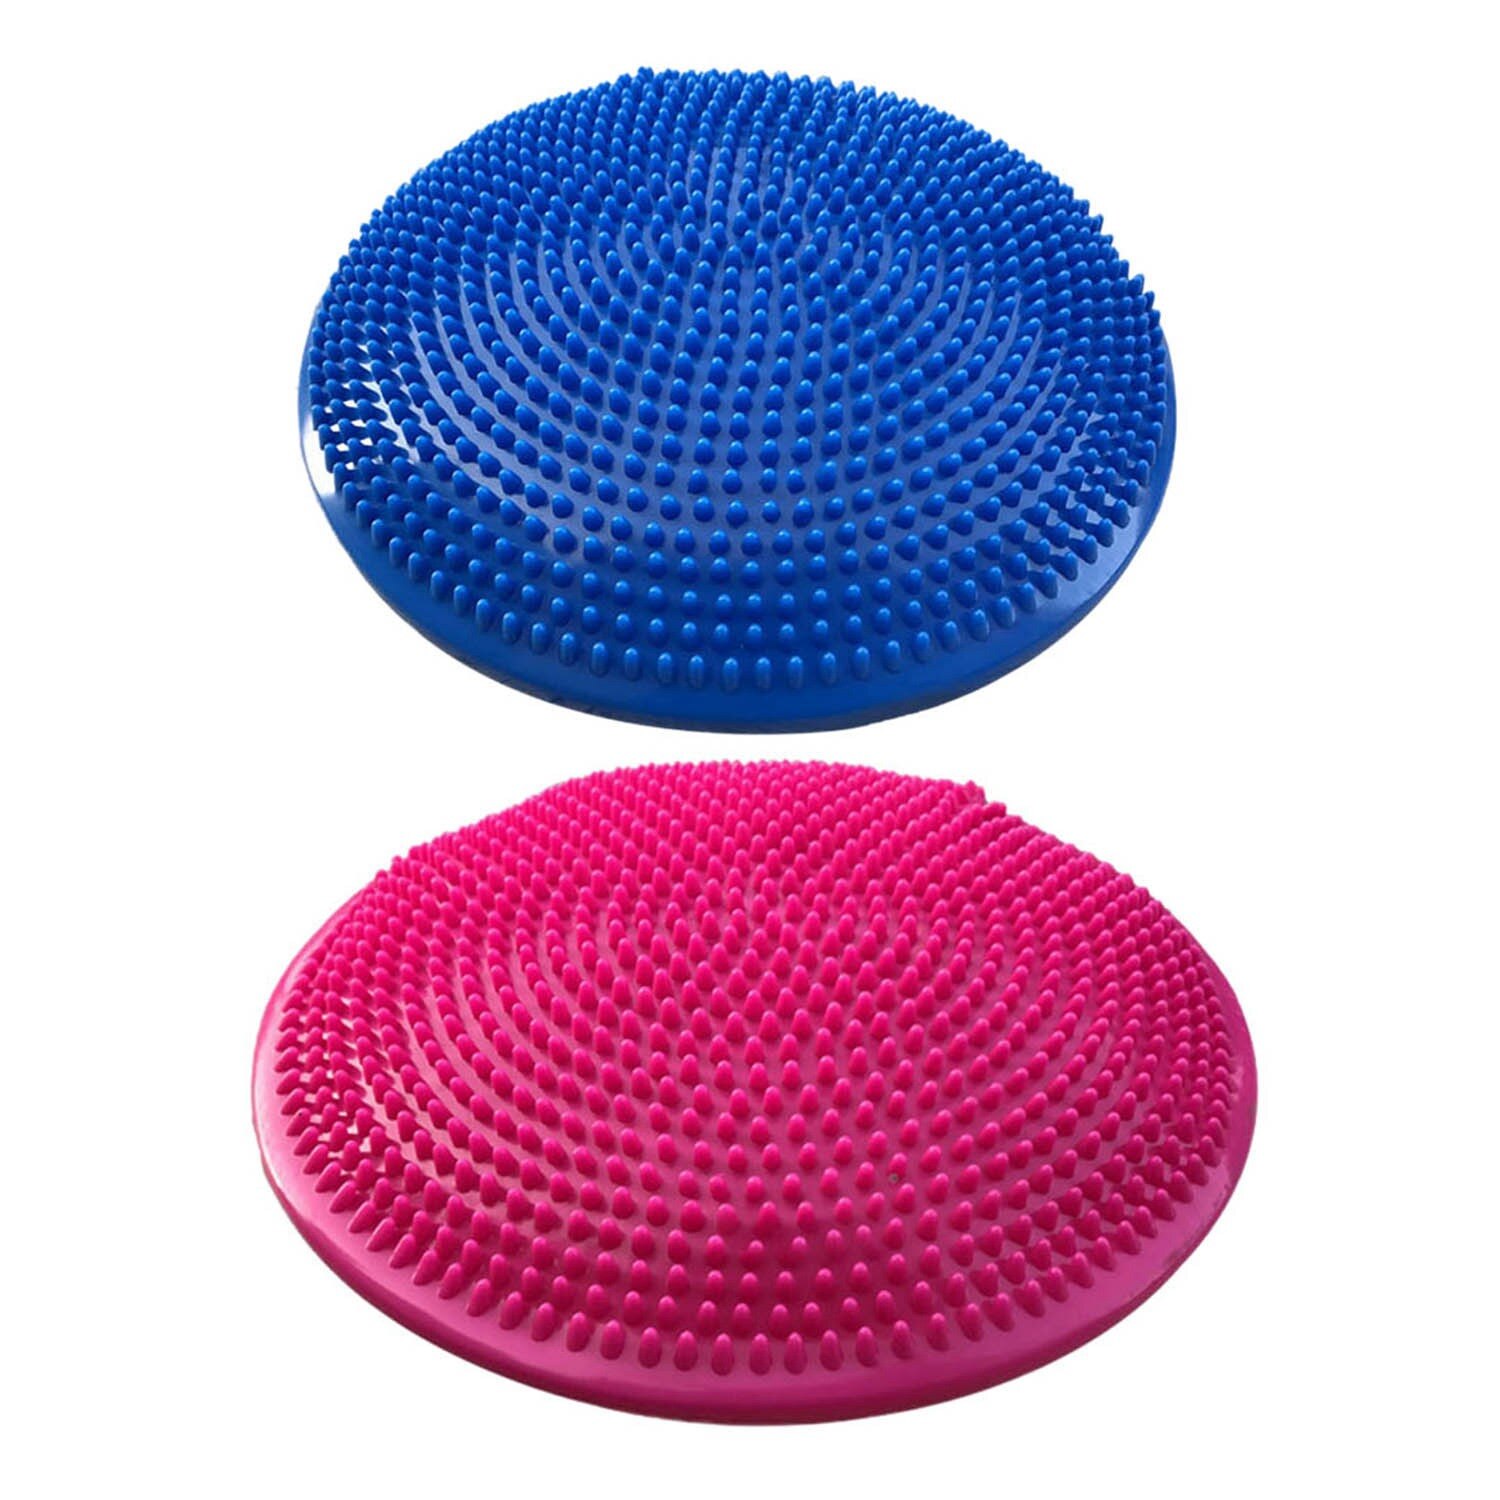 Yoga afbalancerede måtter massagepude pude balance disk balance balde optøjer yoga pude ankel rehabilitering pude pad